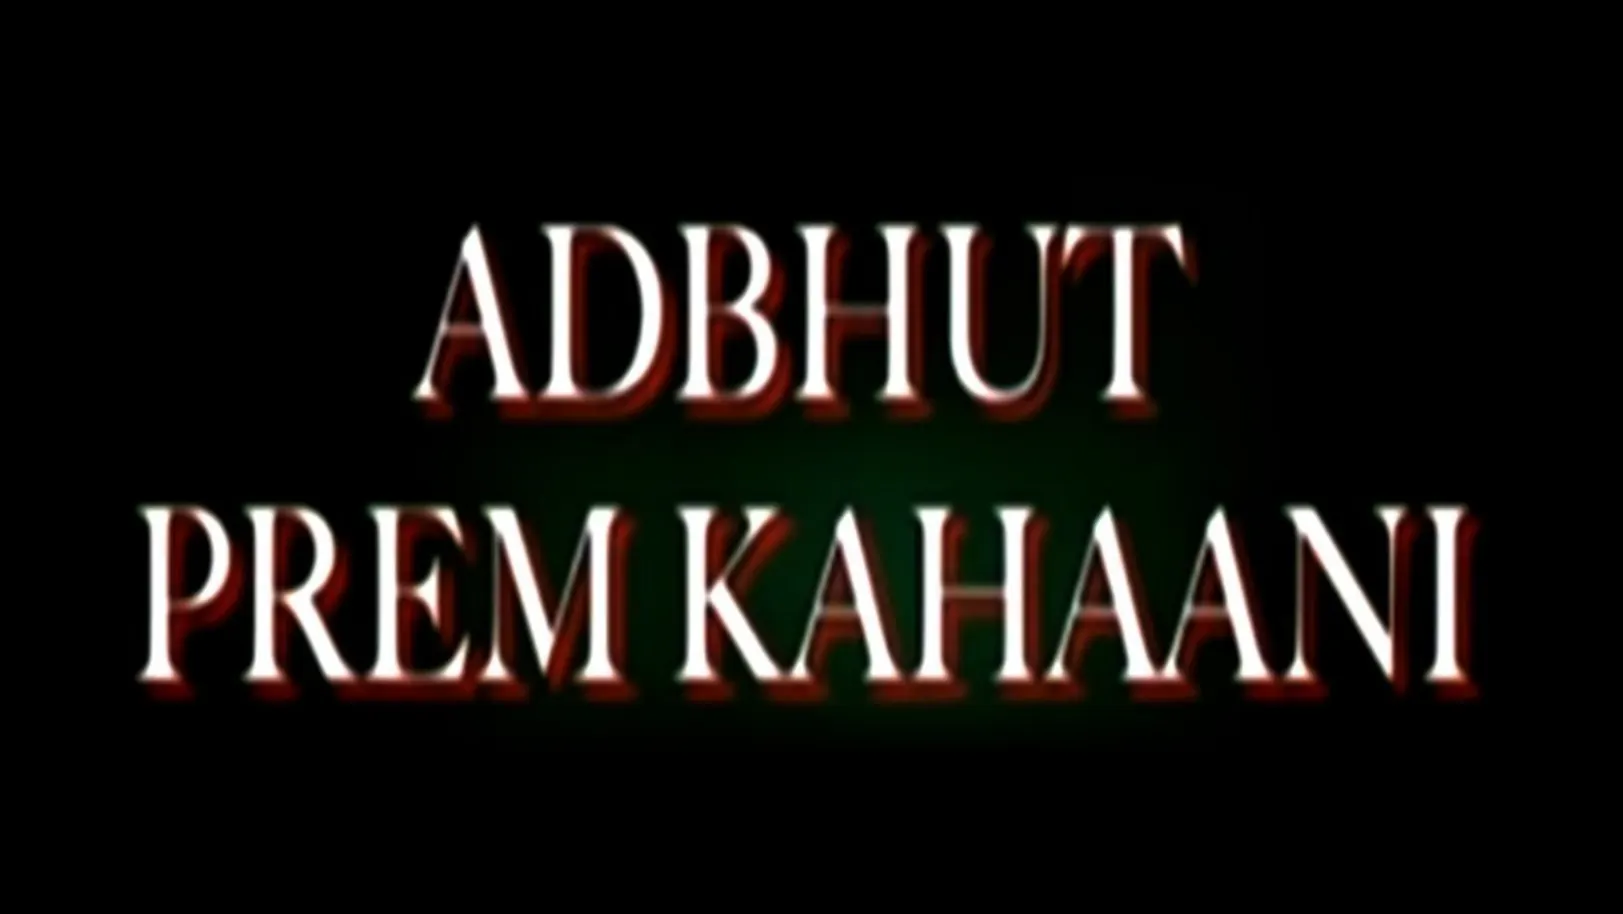 Adhbhut Prem Kahani Movie